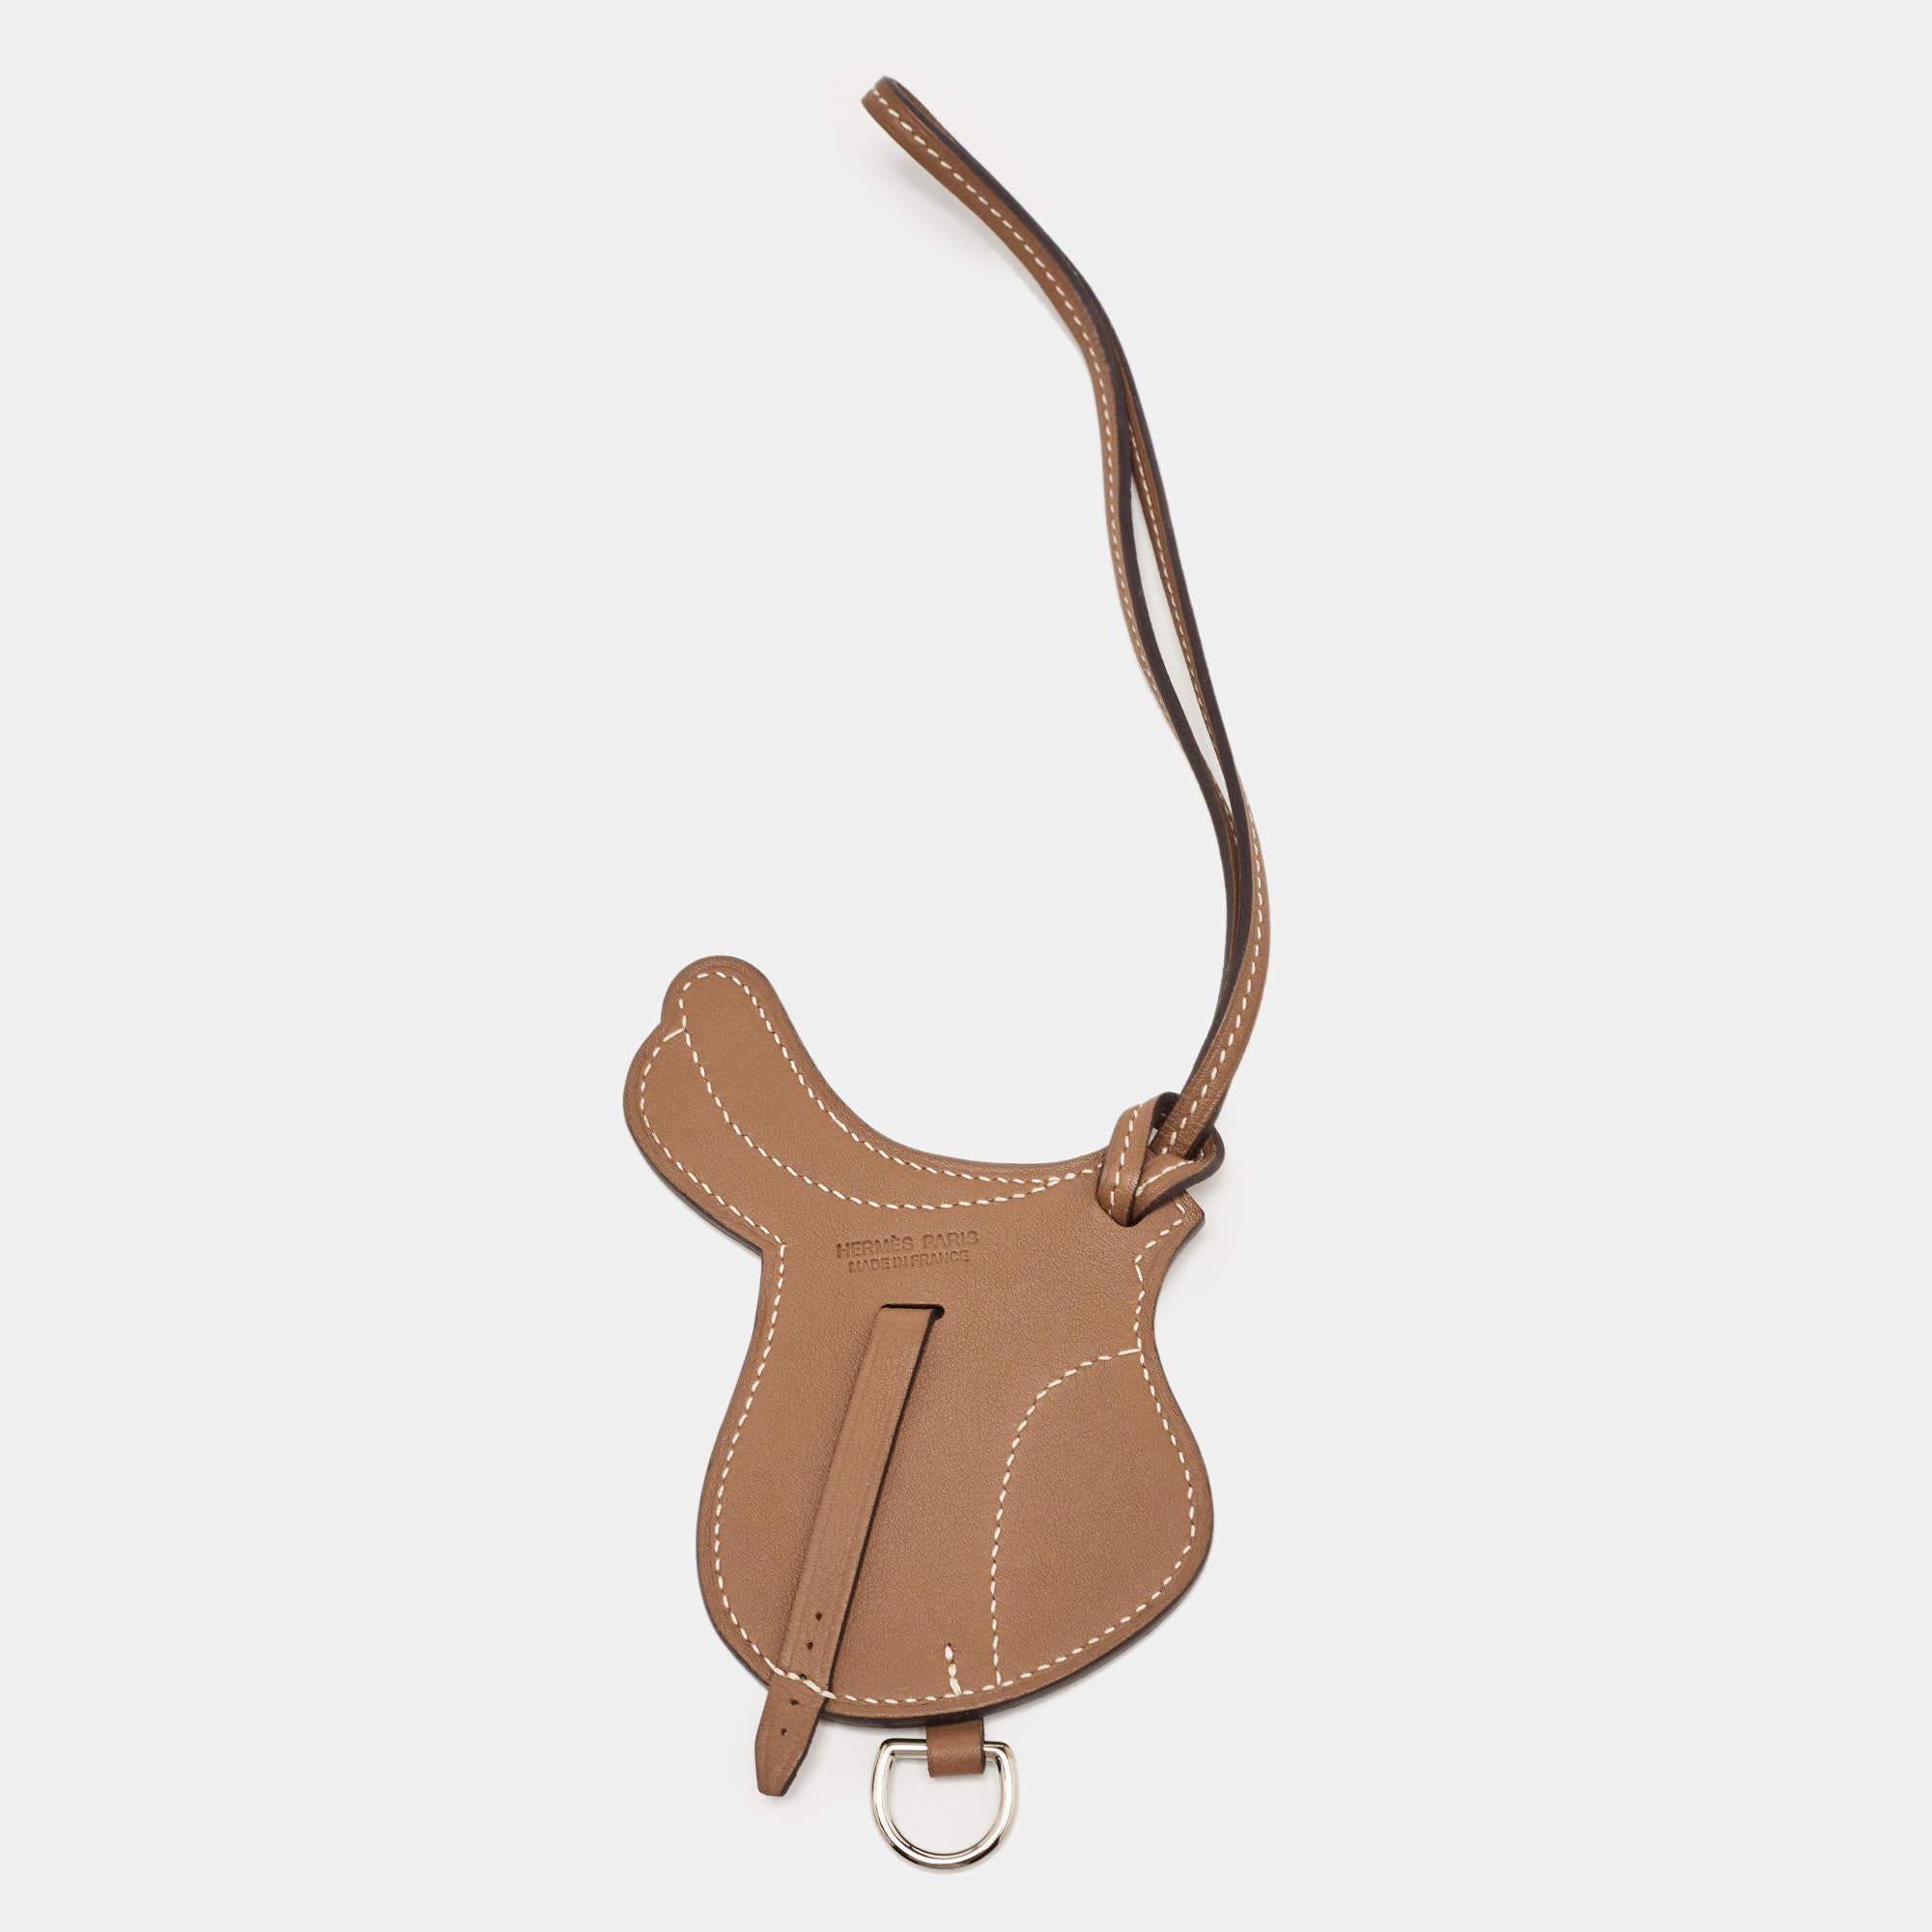 La breloque du sac Paddock Selle d'Hermès est un accessoire exquis réalisé dans un luxueux cuir Swift. Son design se caractérise par une teinte luxueuse. Cette charmante pièce complète parfaitement tous les sacs Hermès, ajoutant une touche